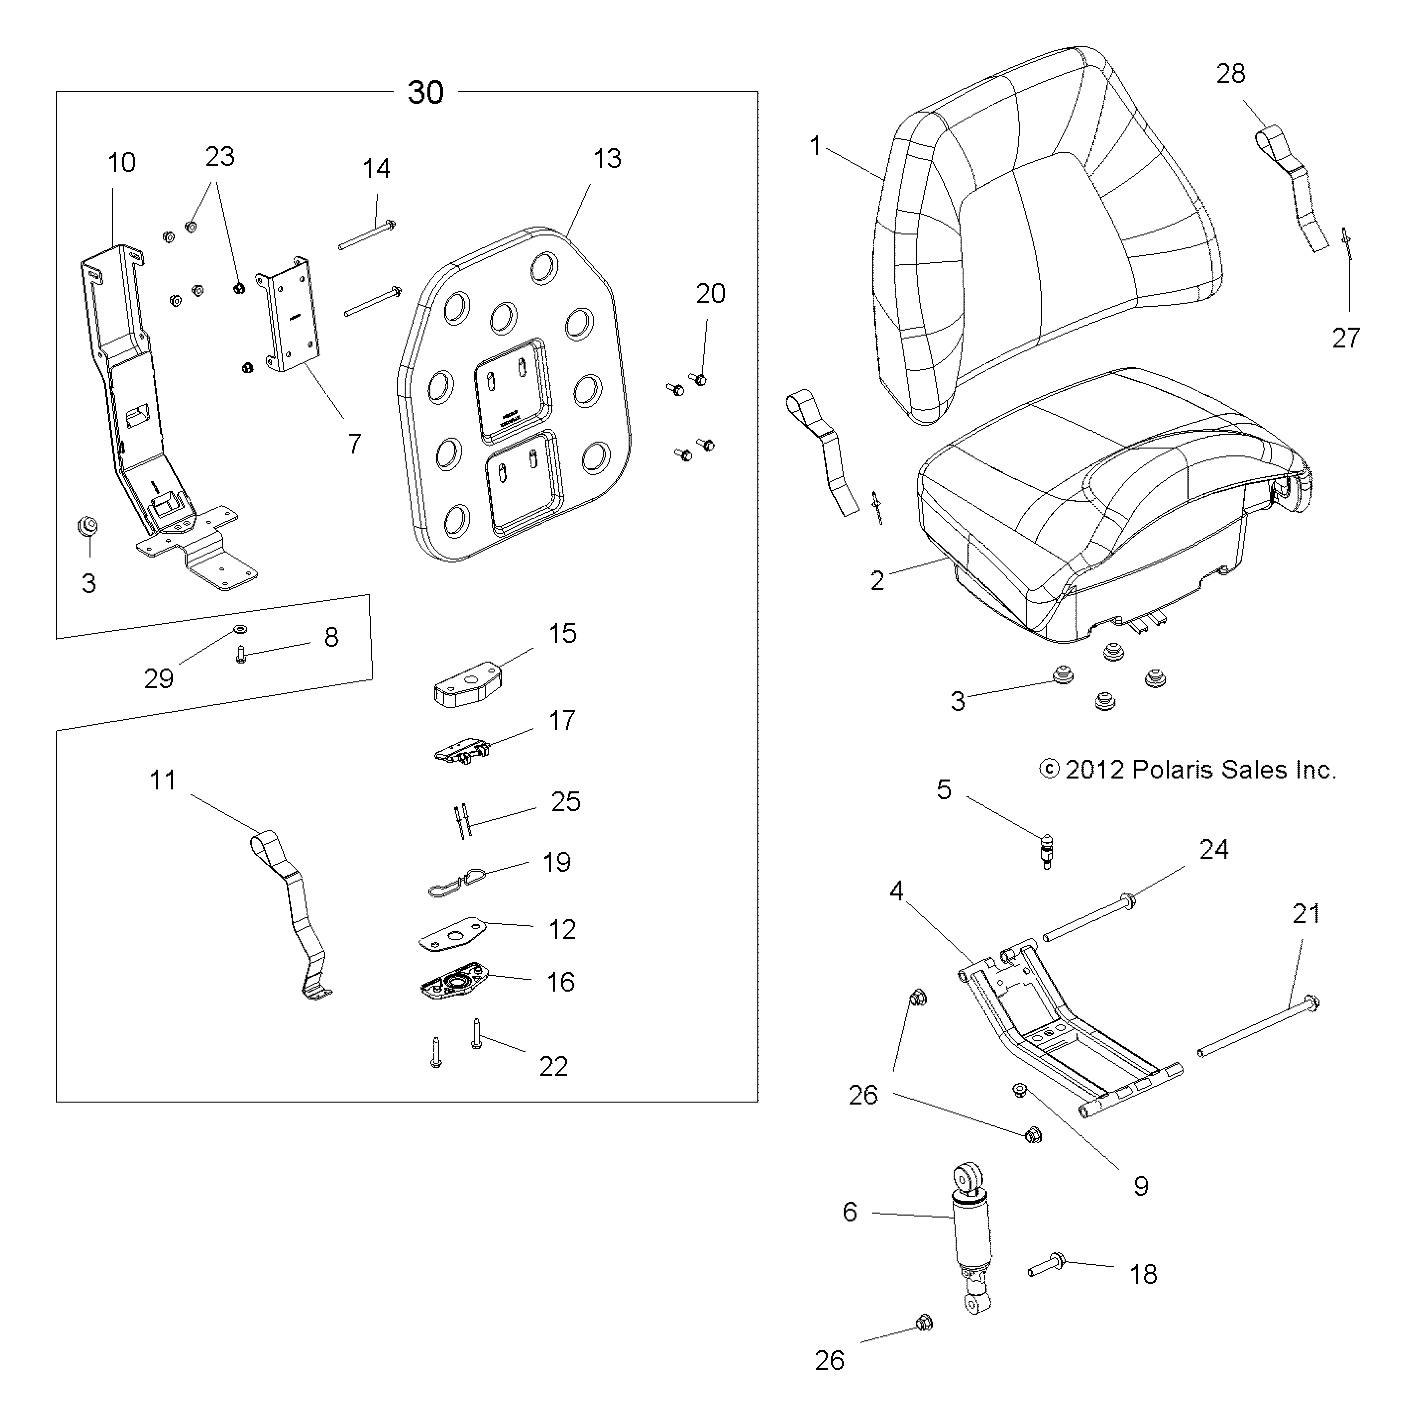 Foto diagrama Polaris que contem a peça 5251162